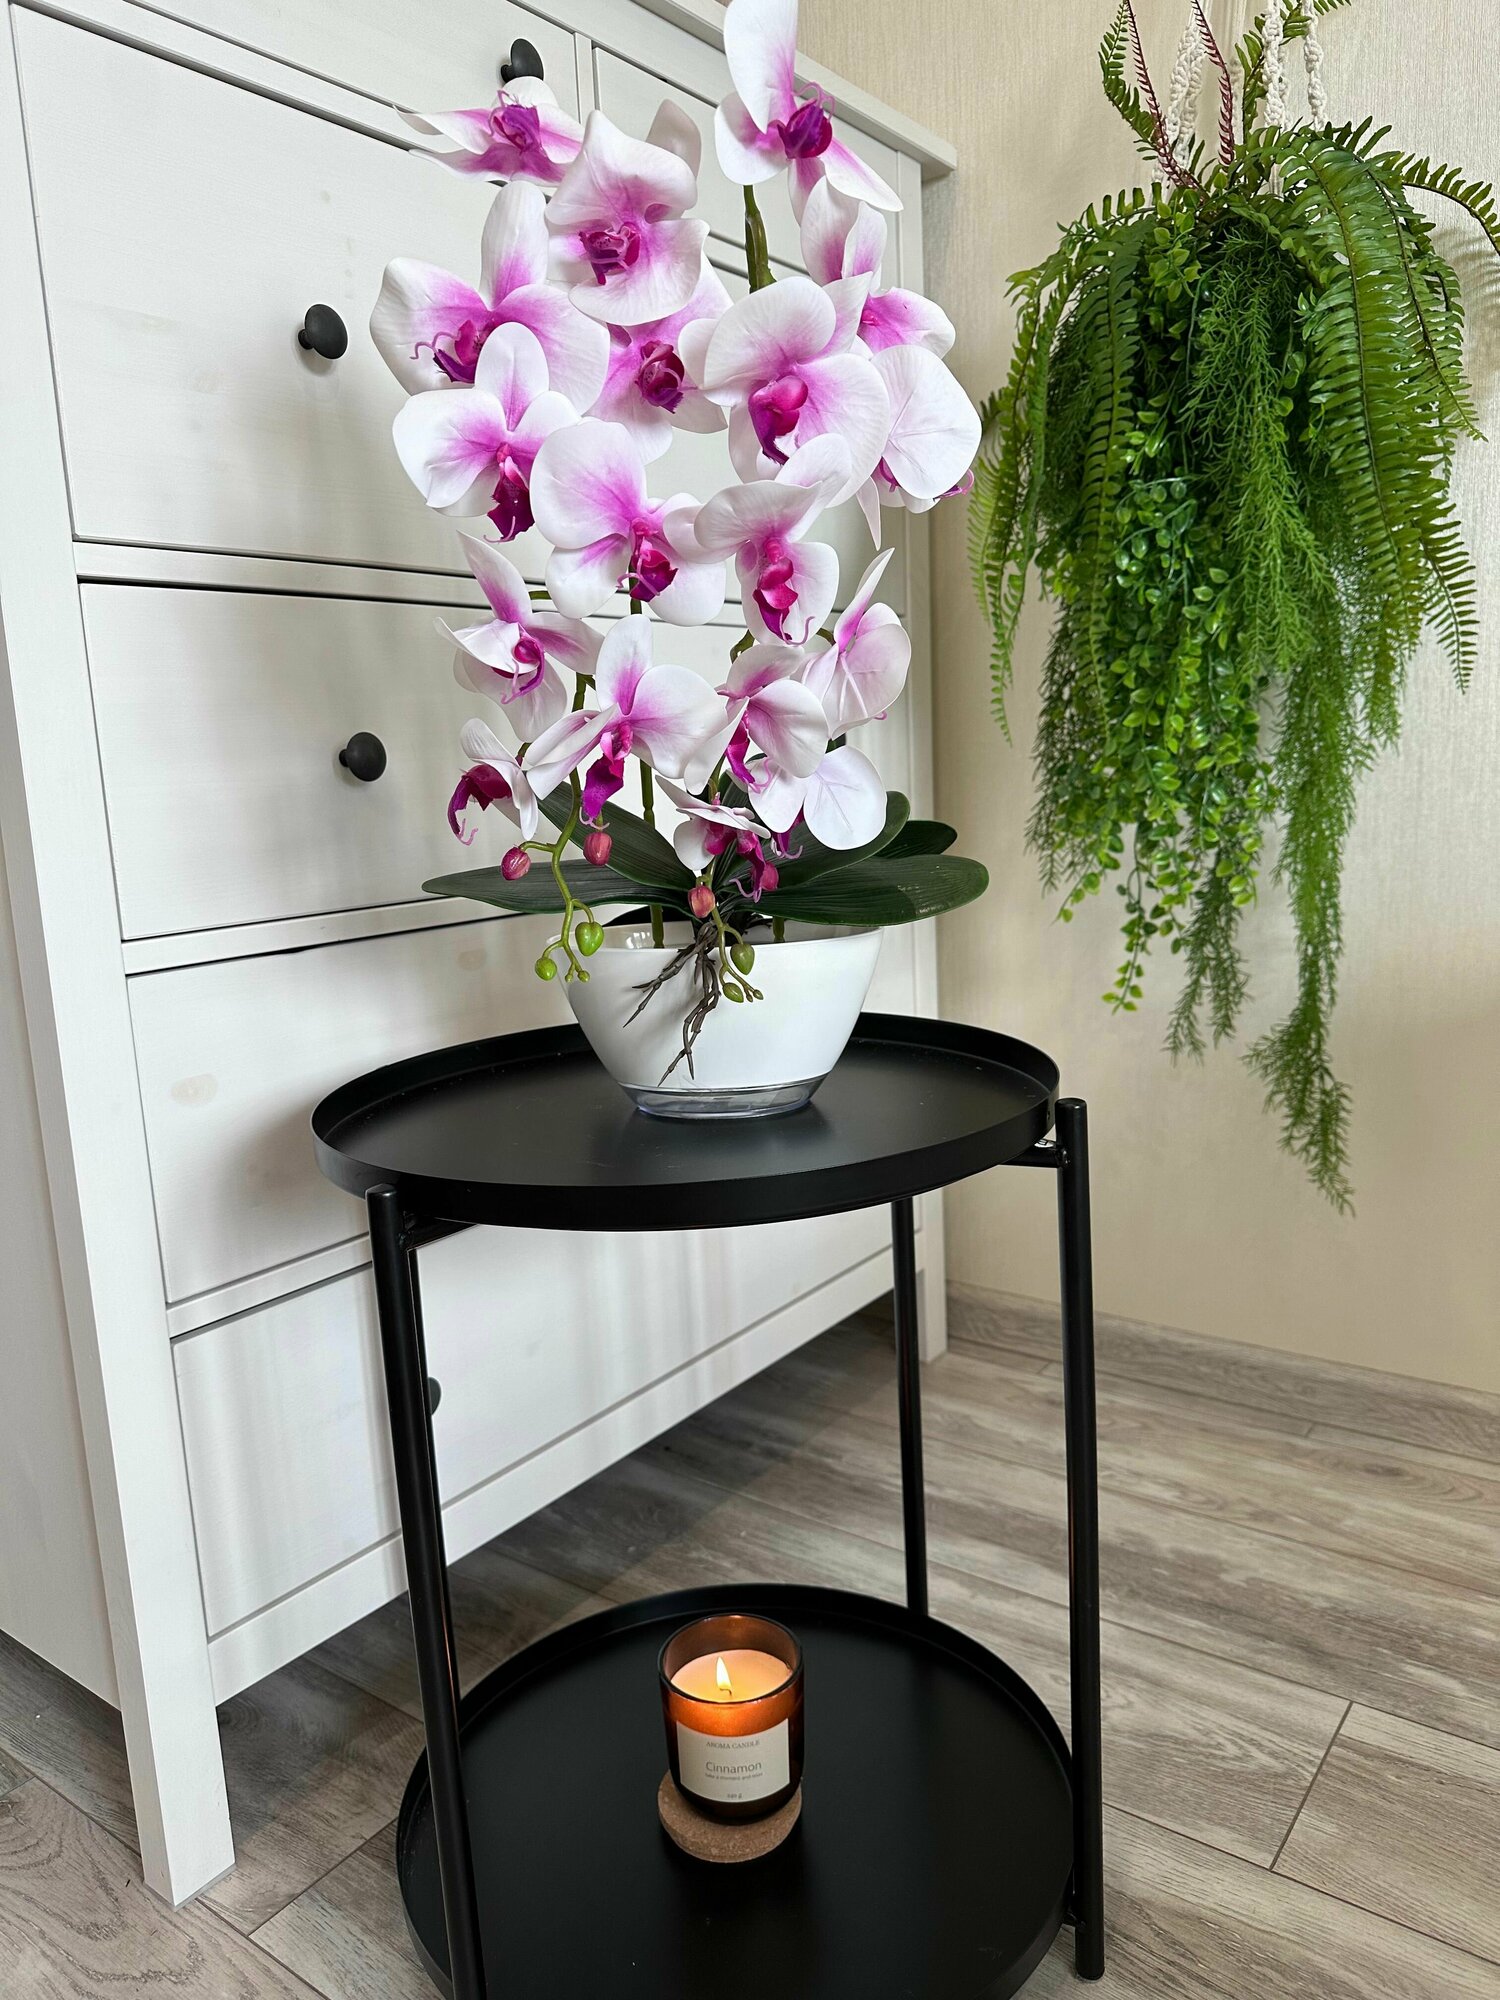 Искусственная Орхидея силиконовая в кашпо для декора интерьера